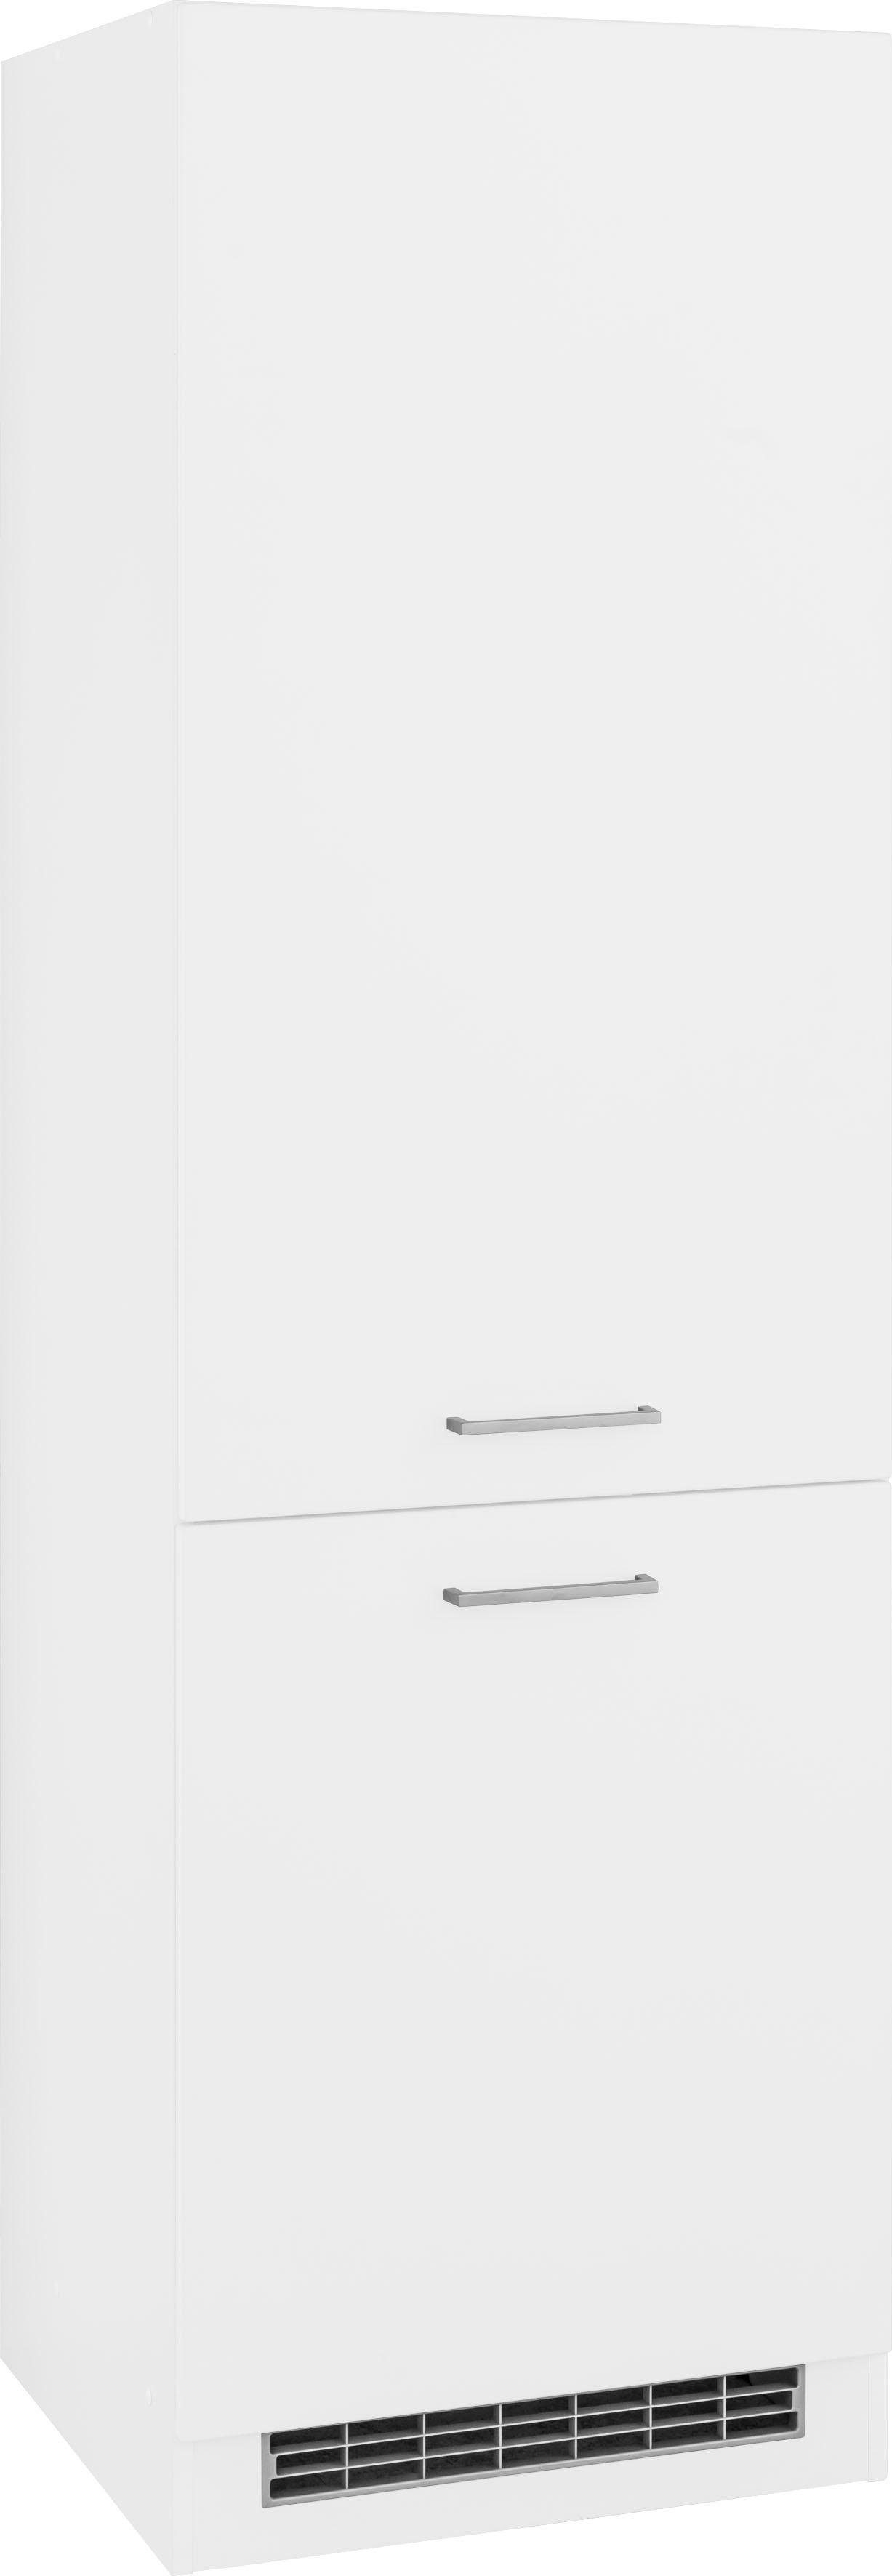 HELD MÖBEL Kühlumbauschrank Visby für großen Kühlschrank oder Kühl/Gefrierkombi, Nischenmaß 178 cm weiß